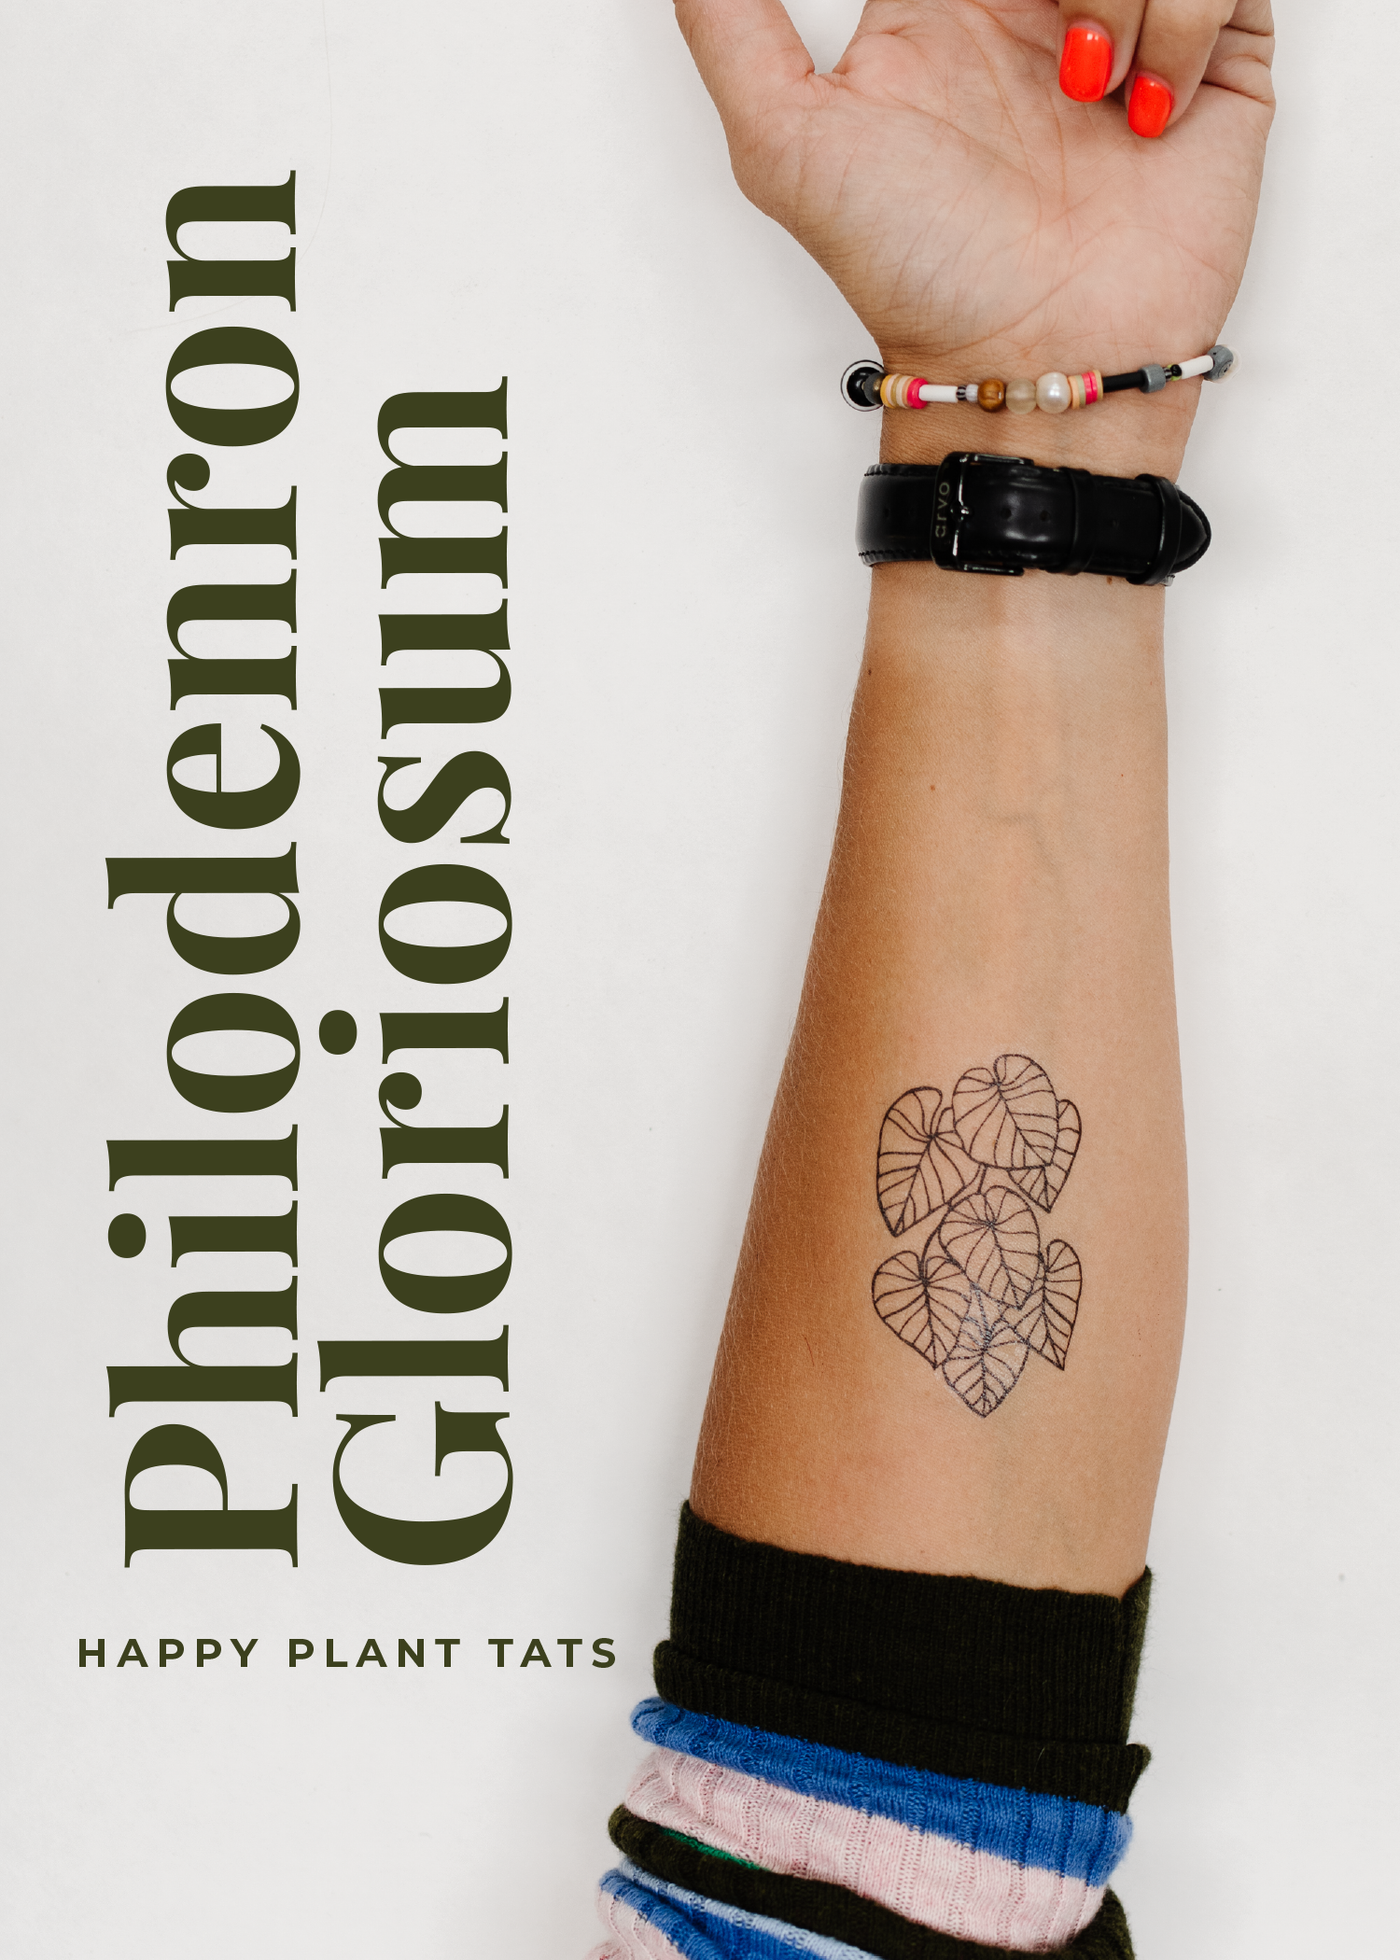 Happy Plant Tats Temporary Tattoos - Happy Happy Houseplant